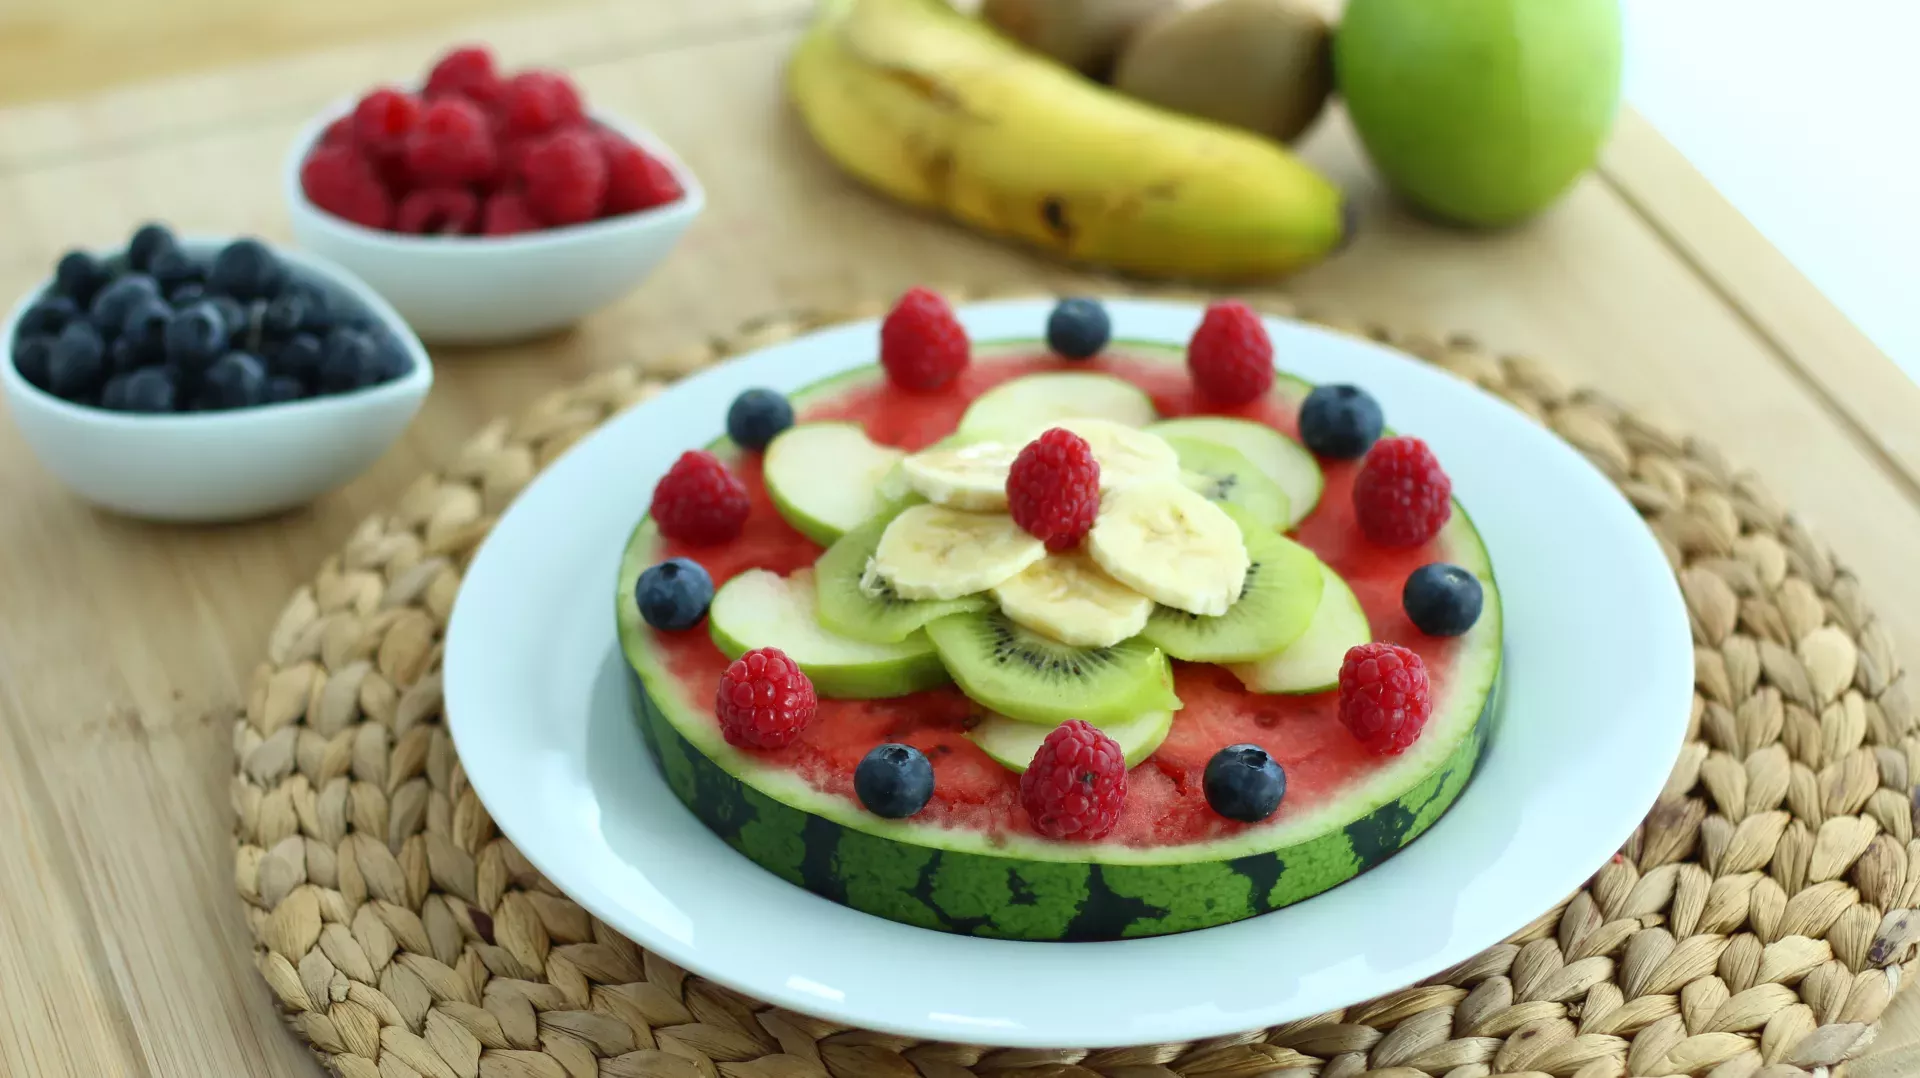 Come presentare la frutta a fine pasto? Idee e consigli per far colpo sui vostri ospiti!